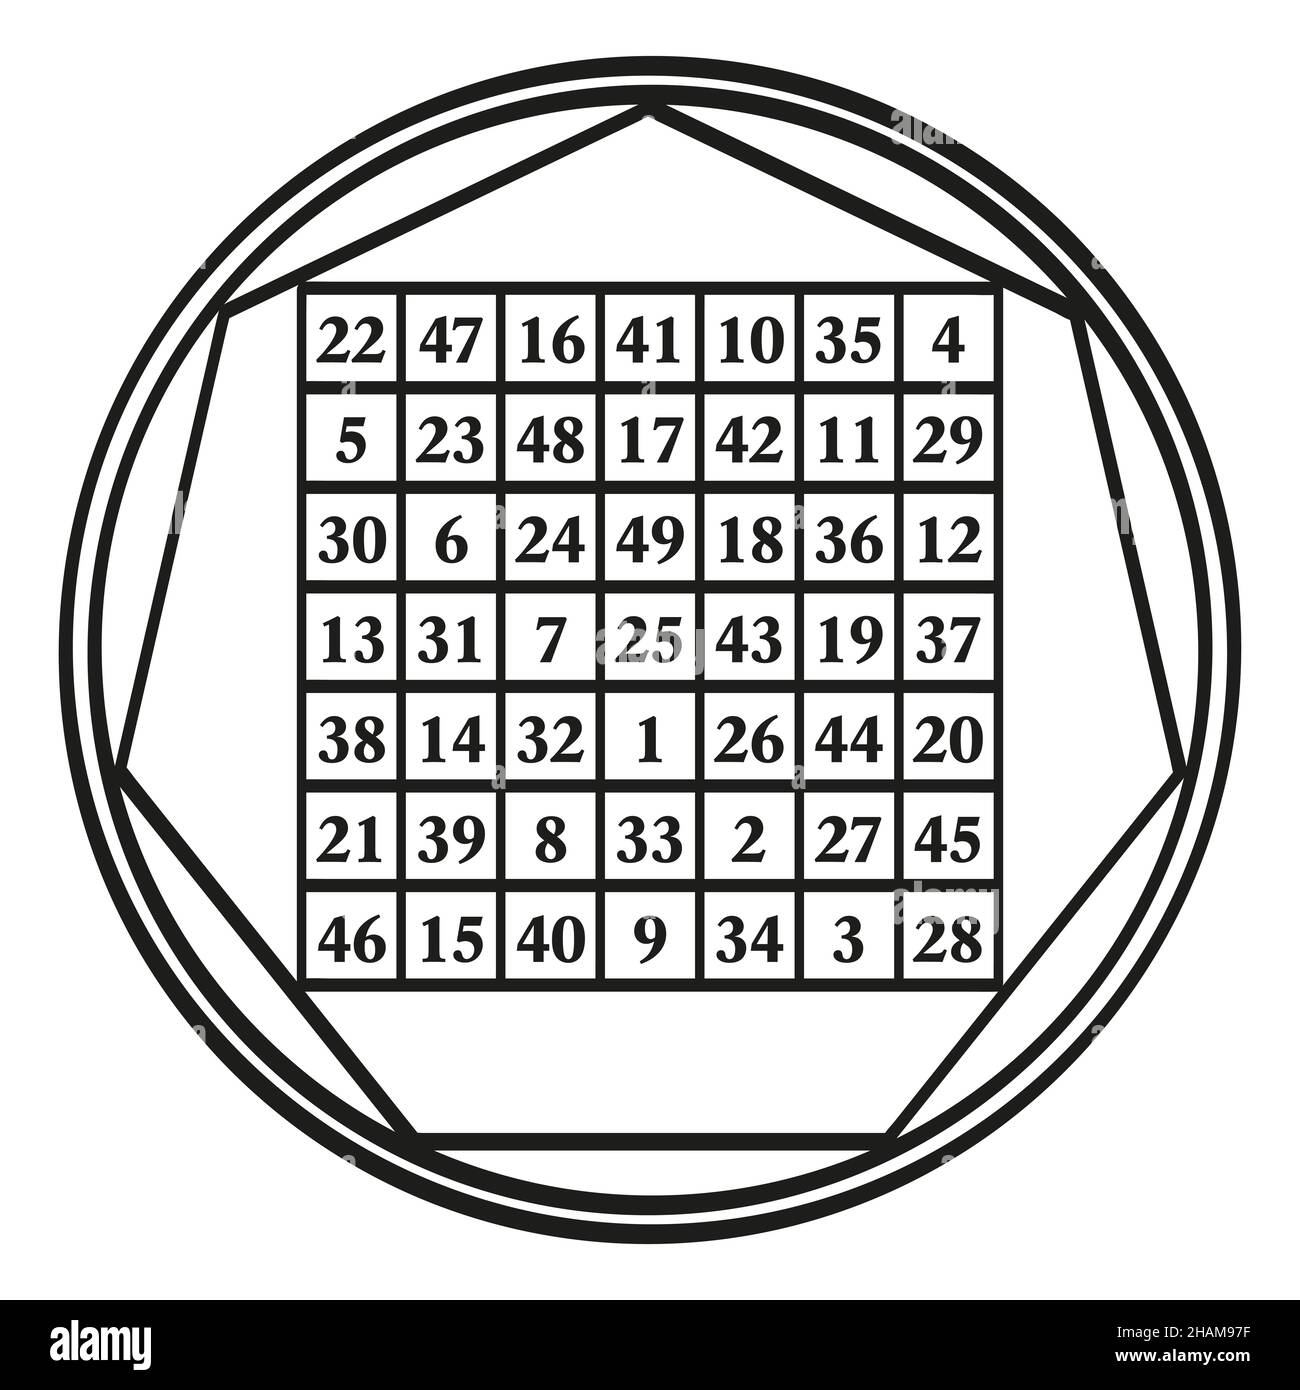 Ordine sette quadrato magico, un simbolo assegnato al pianeta astrologico Venere, con la costante magica 175. Quadrato magico con i numeri da 1 a 49. Foto Stock